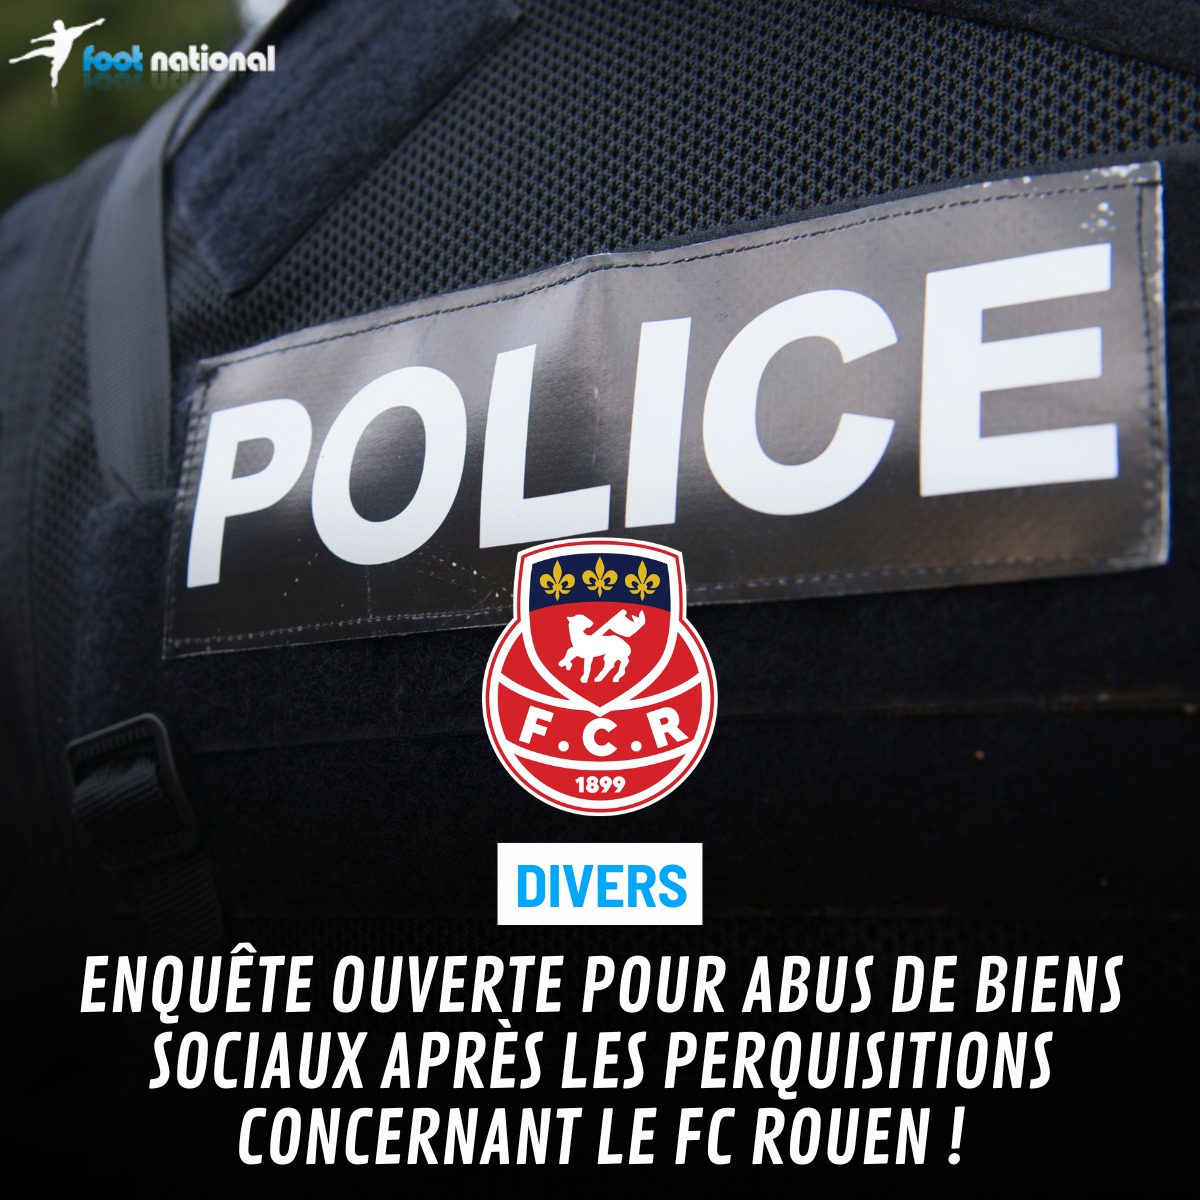 Après les perquisitions du jour, le FC Rouen a vu une enquête être ouverte pour abus de biens sociaux par le Parquet de Rouen 😱⚖️ Toutes les infos 👉 tinyurl.com/mwc9fuyy